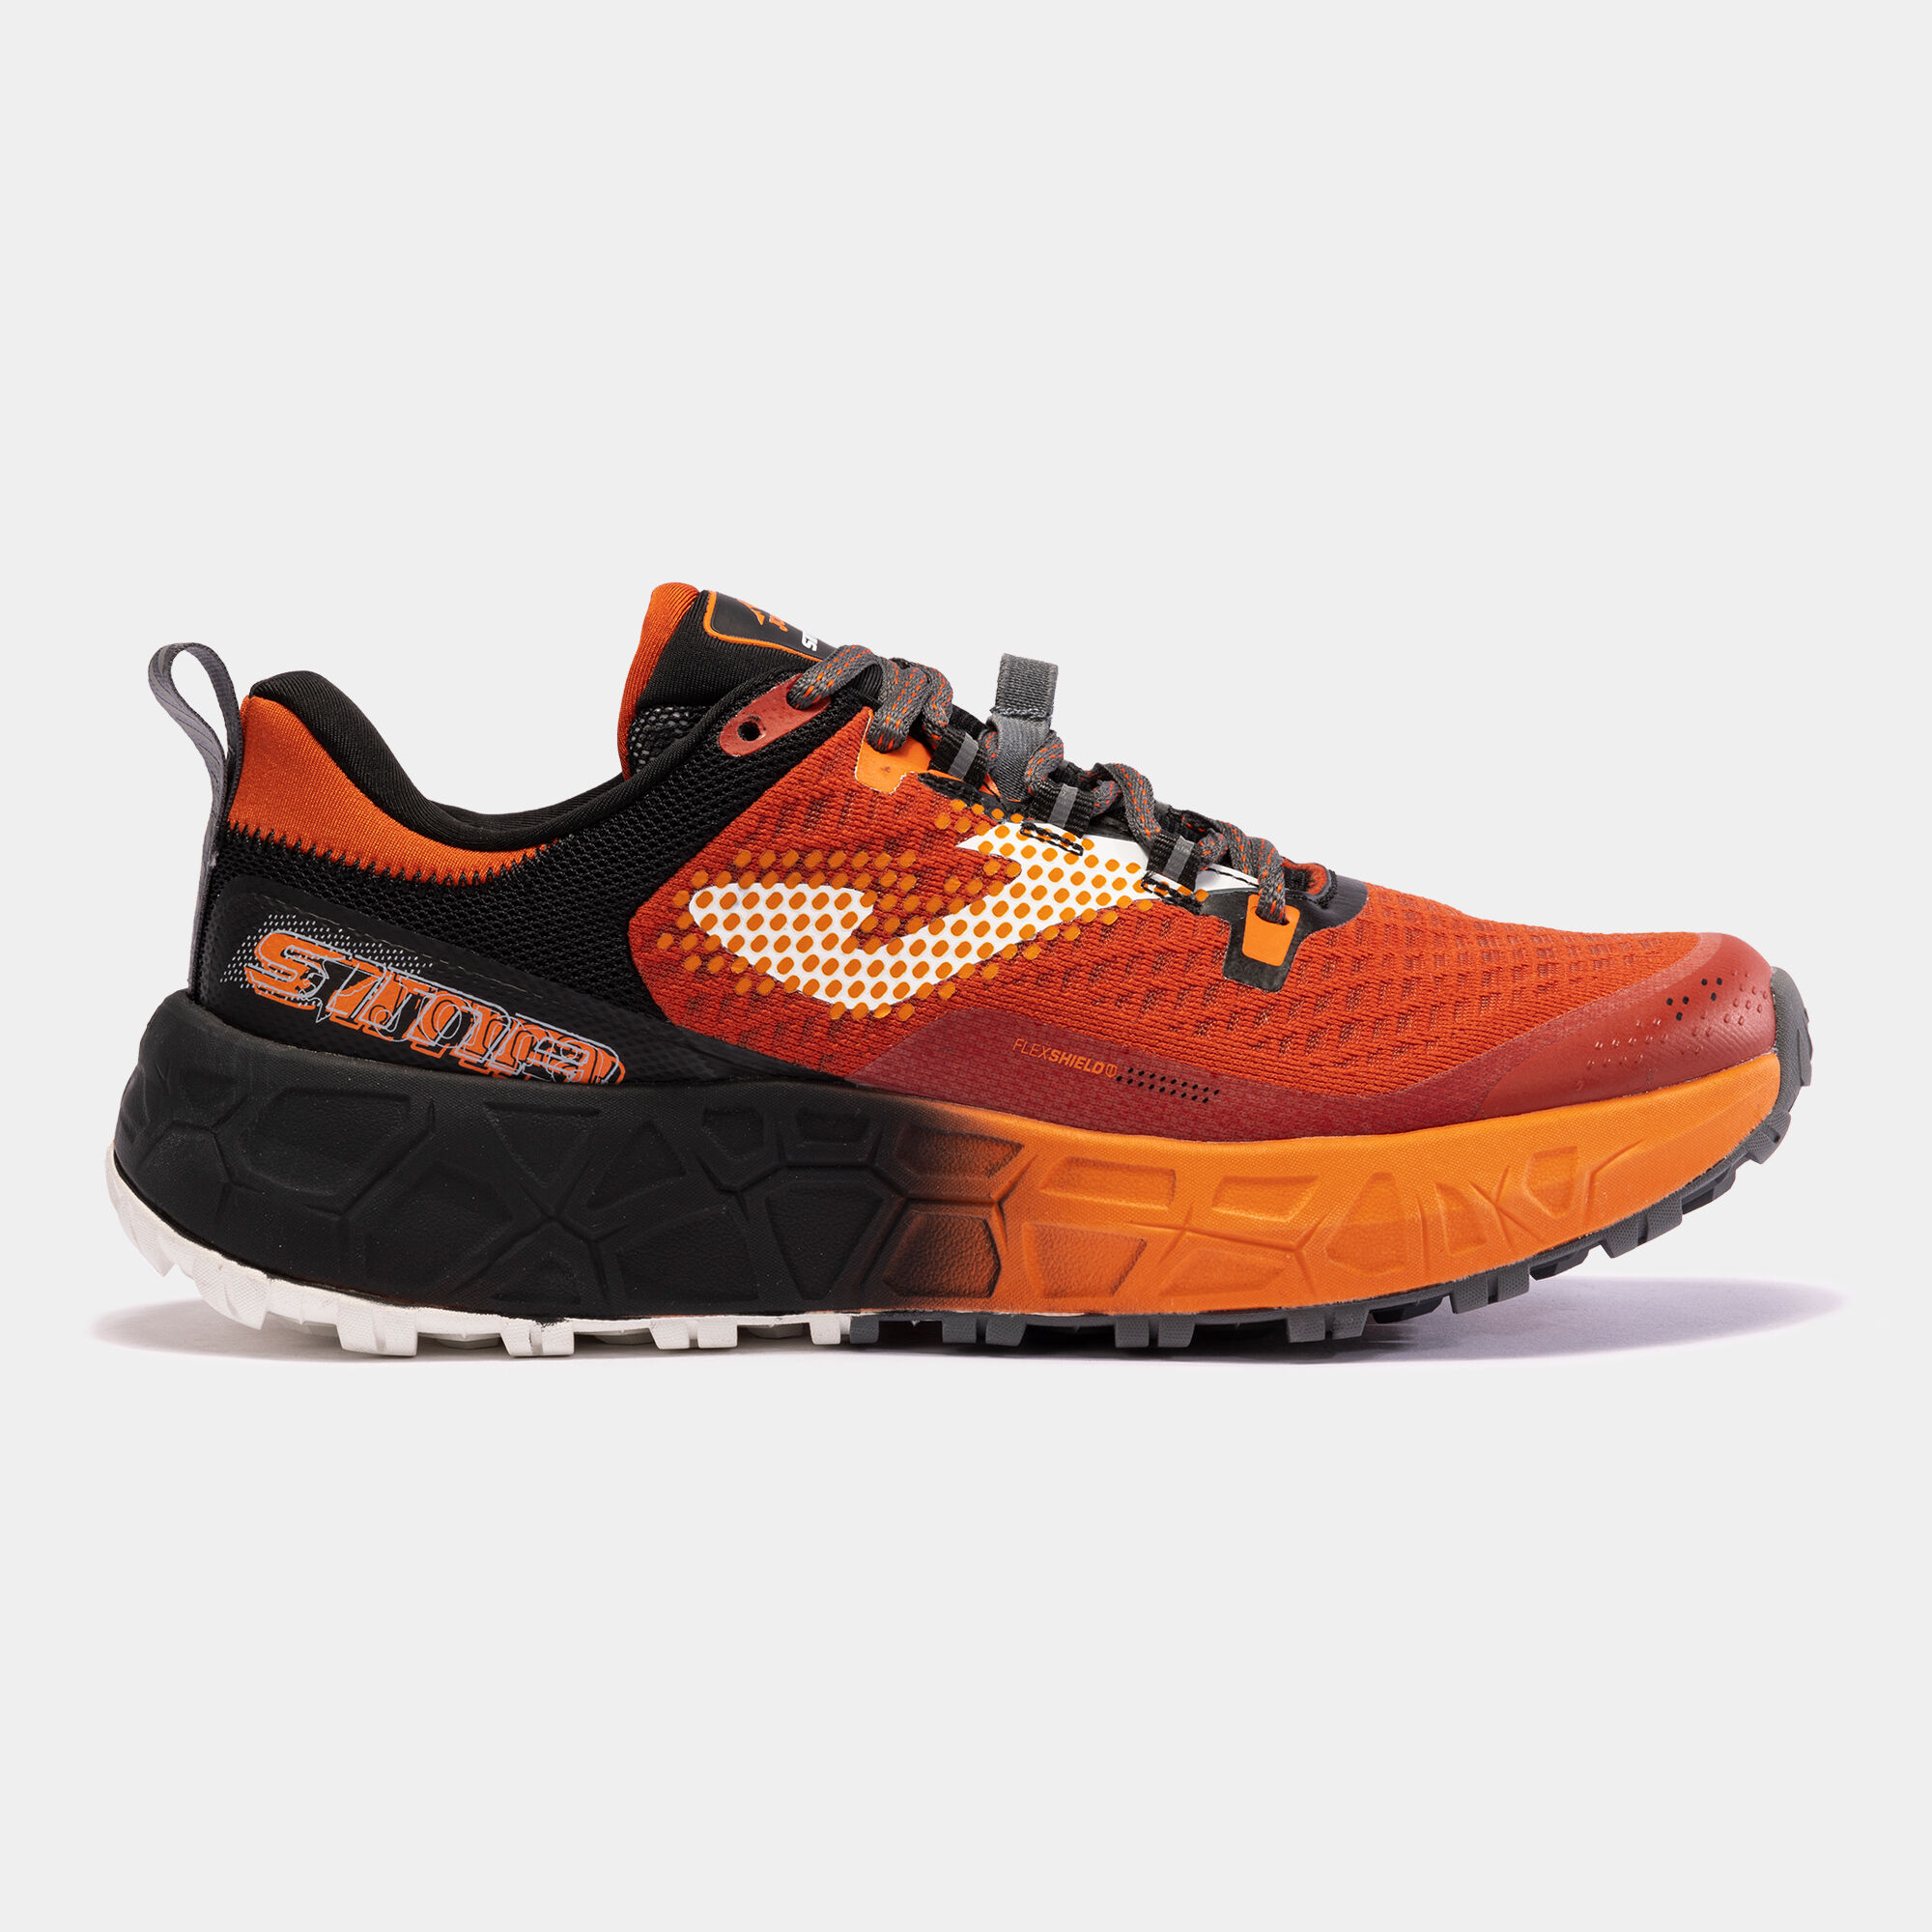 Chaussures trail running Sima 24 homme orange